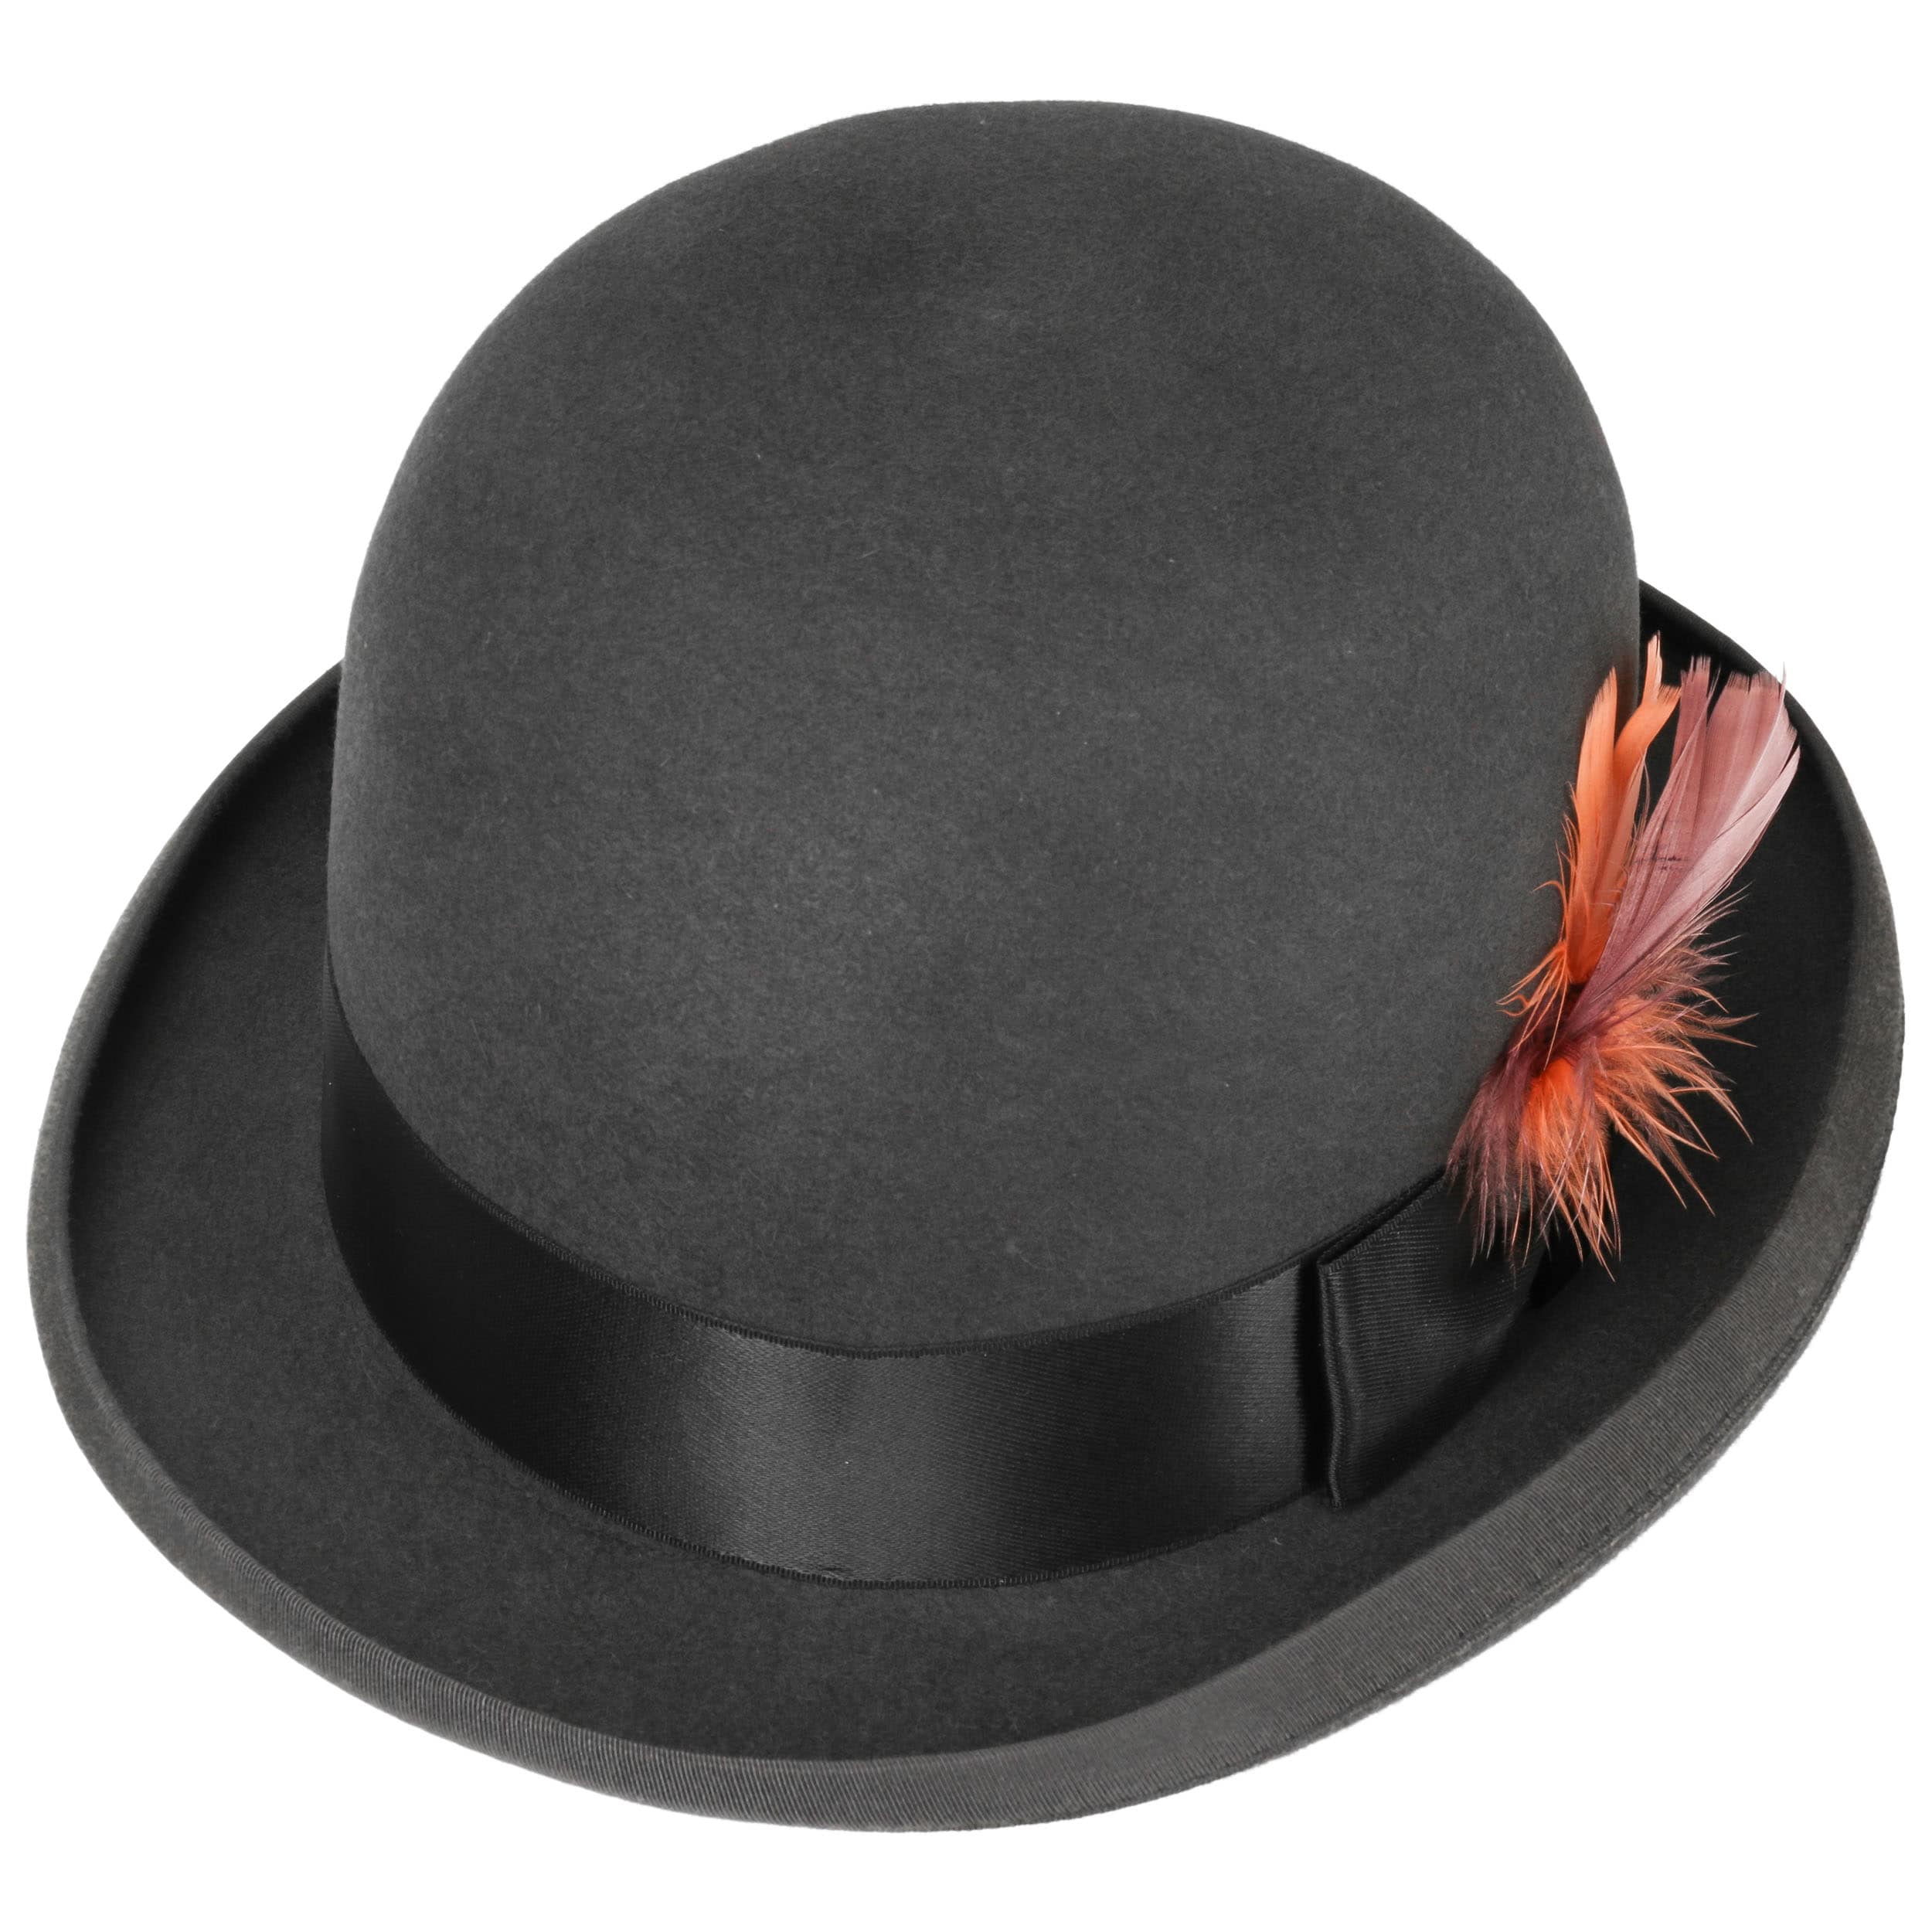 Ennio Gambling Bowler Hat by Stetson - 99,00